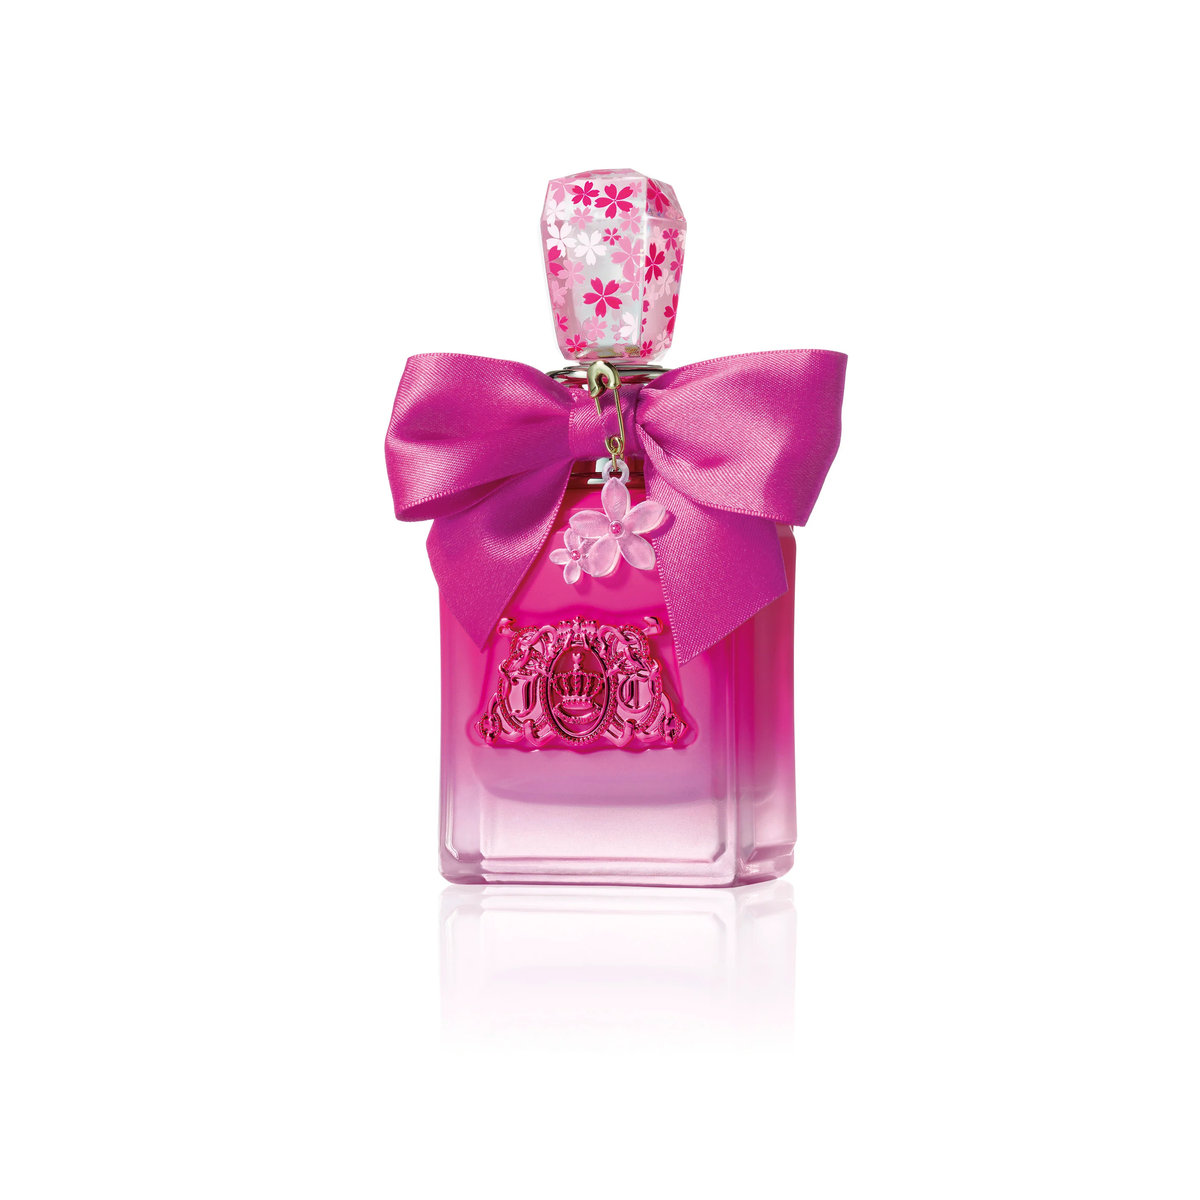 Juicy Couture Viva LA Juicy Petals Please woda perfumowana 100 ml (719346260053)